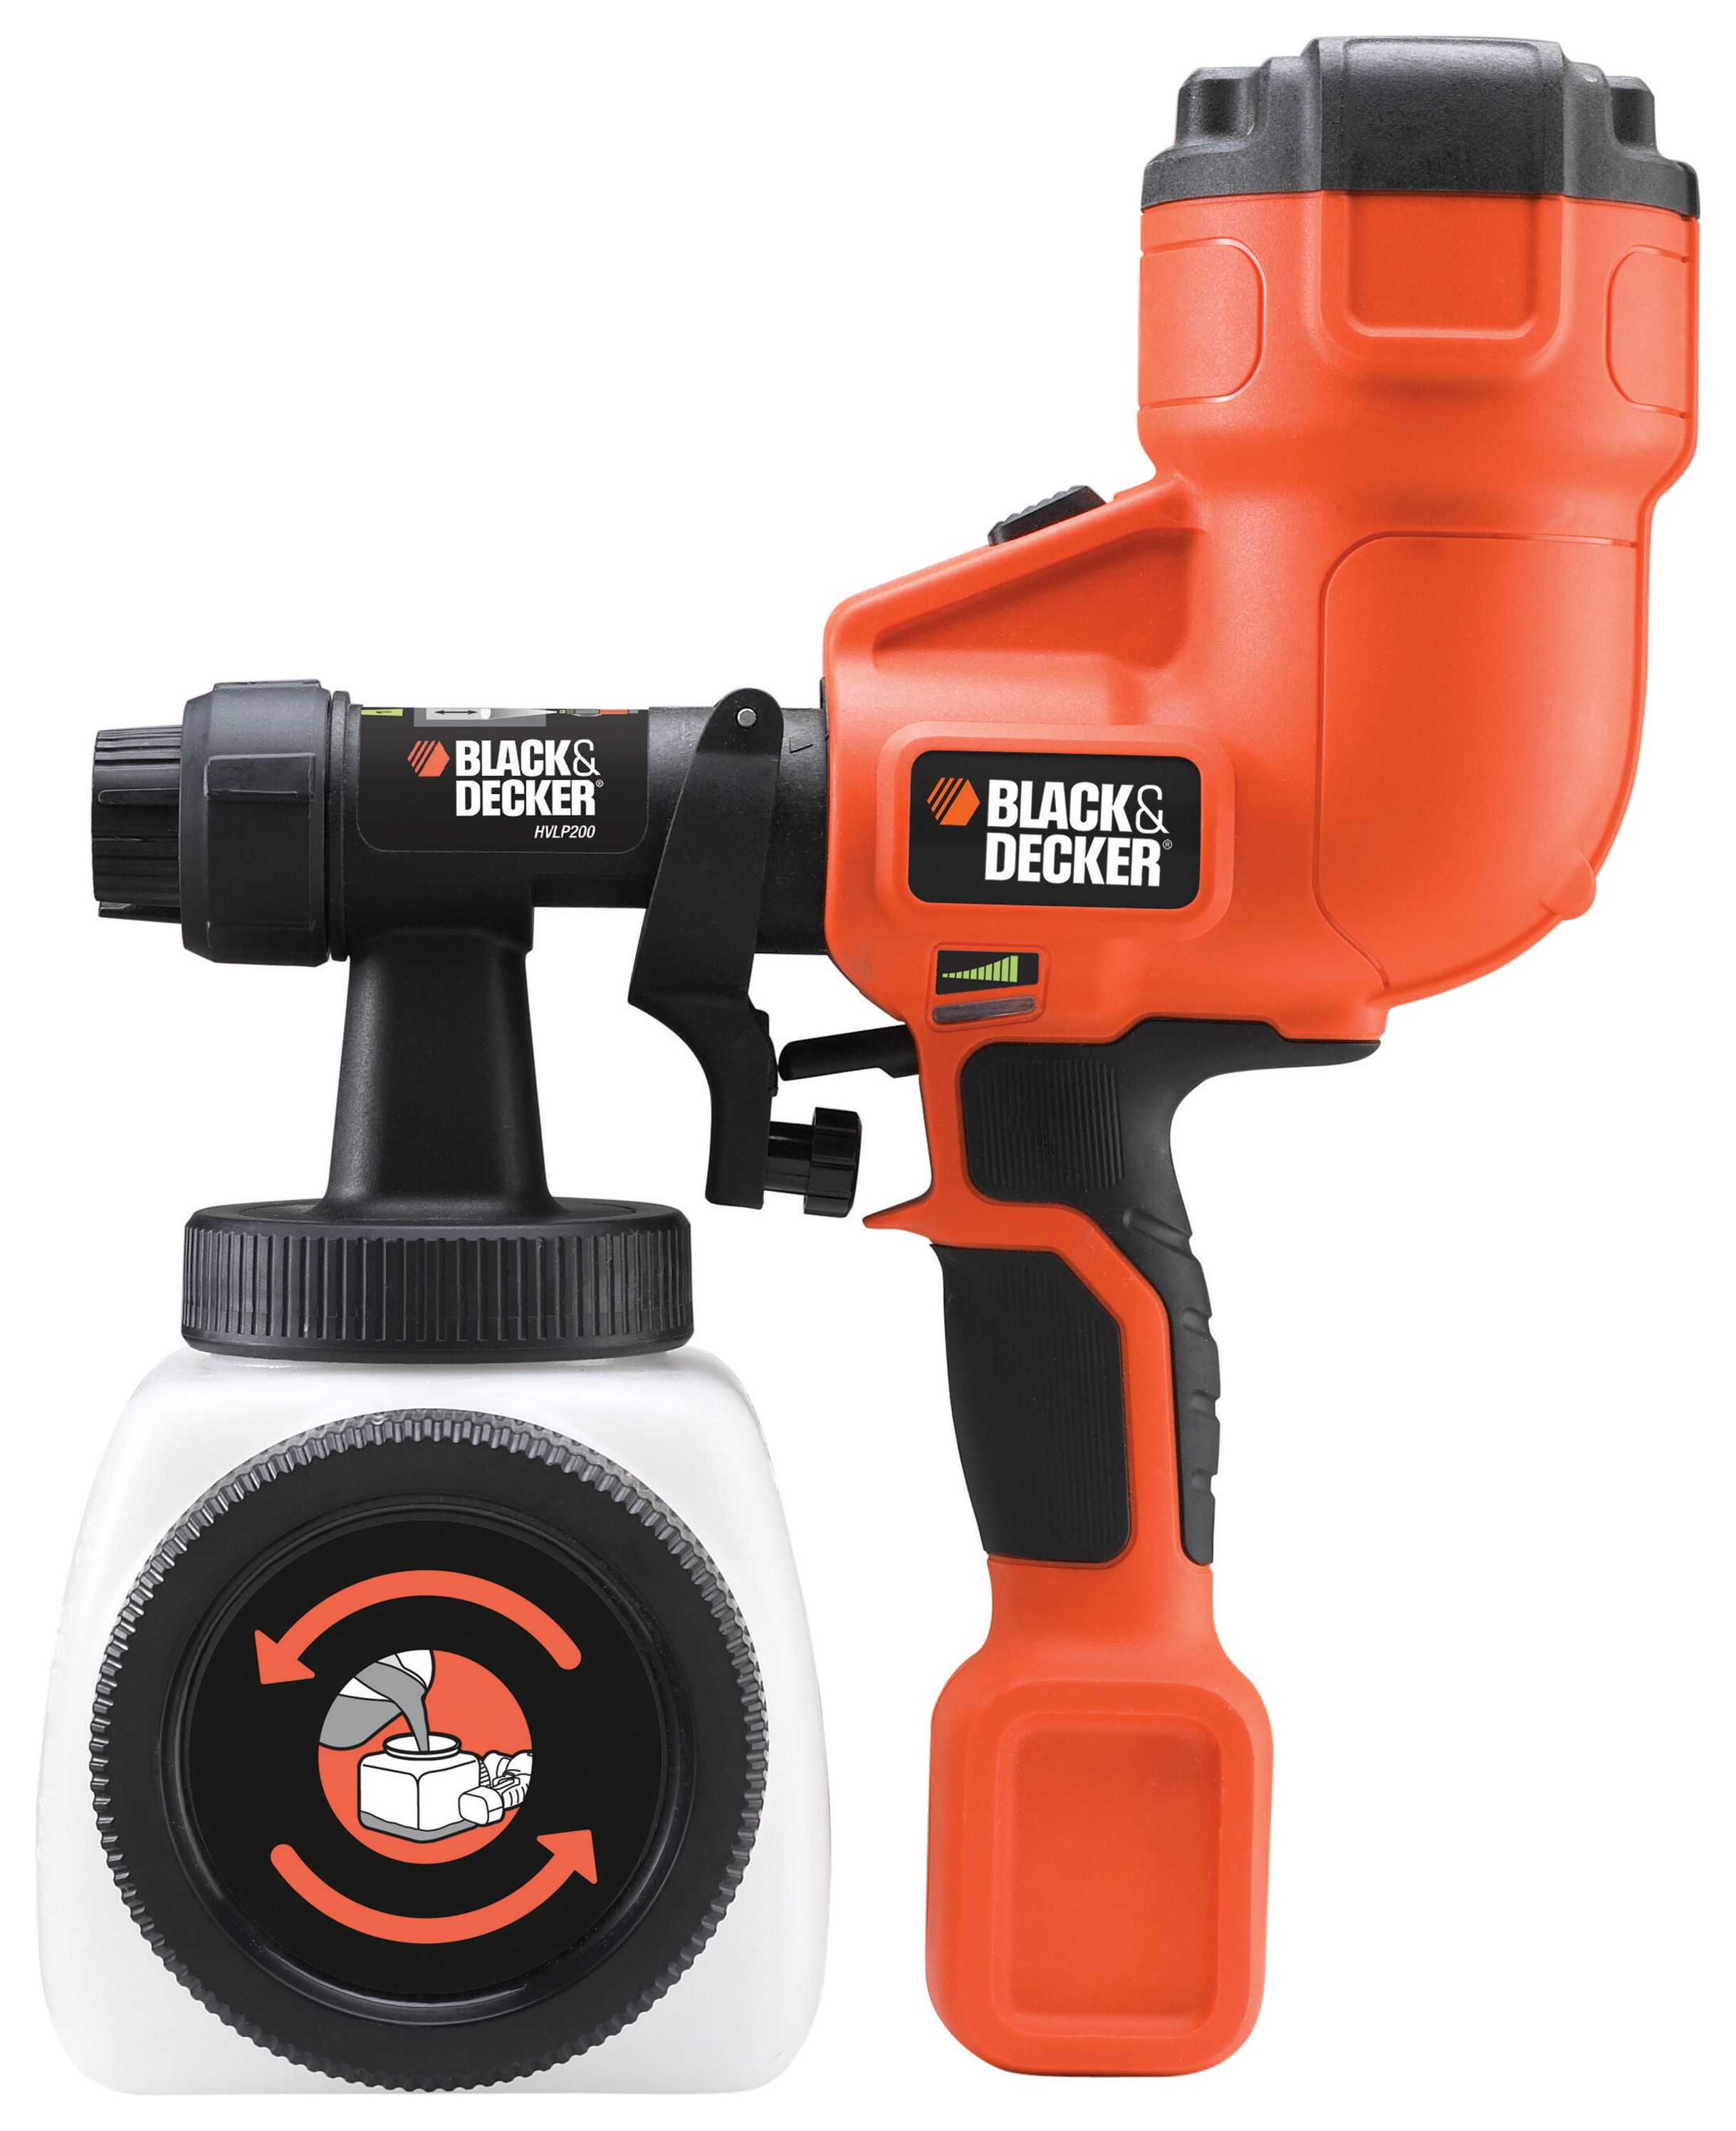 Black & Decker HVLP200-GB Paint Sprayer 400W